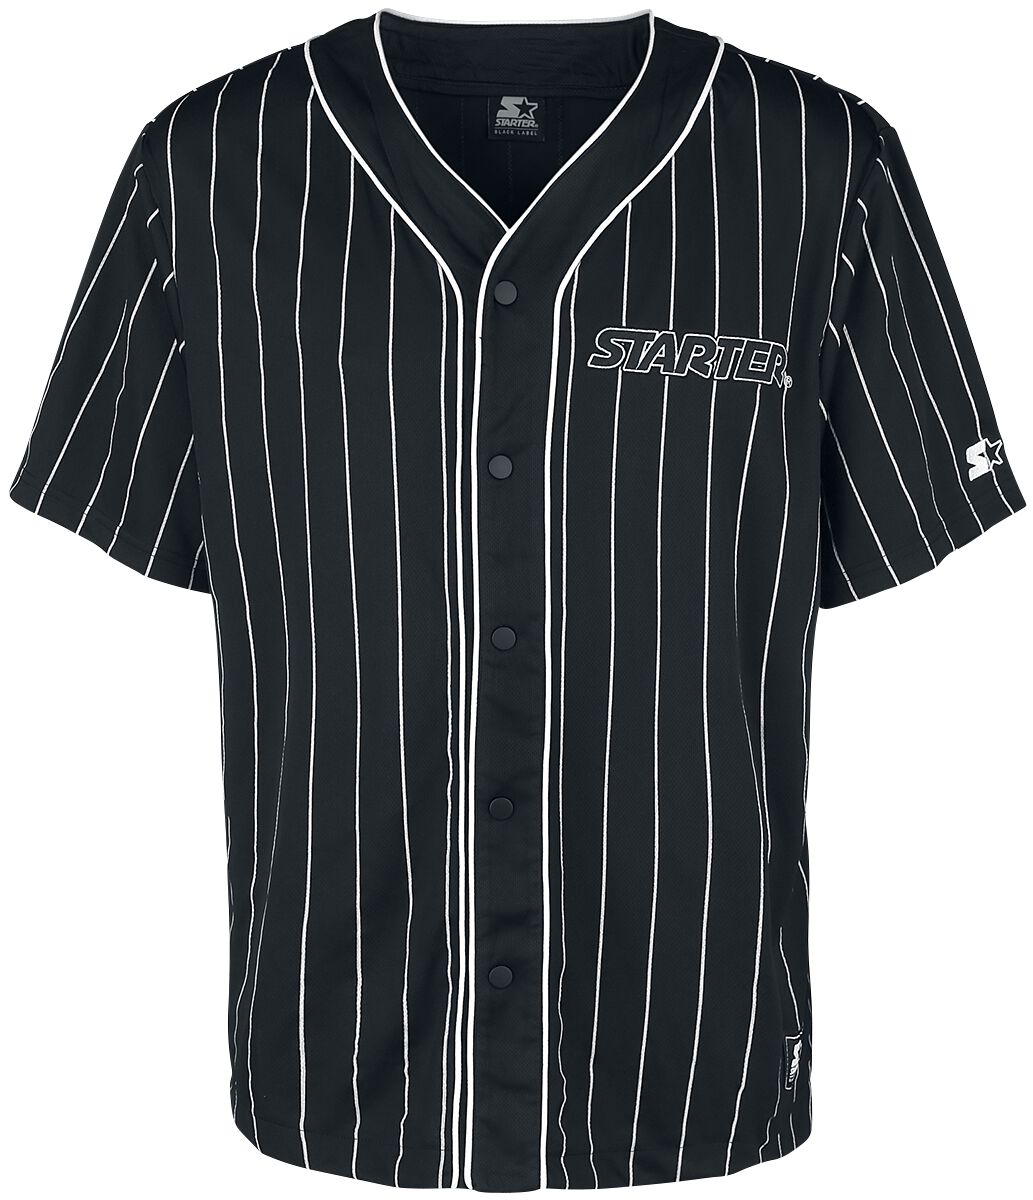 Starter Kurzarmhemd - Baseball Jersey - S bis XL - für Männer - Größe M - schwarz